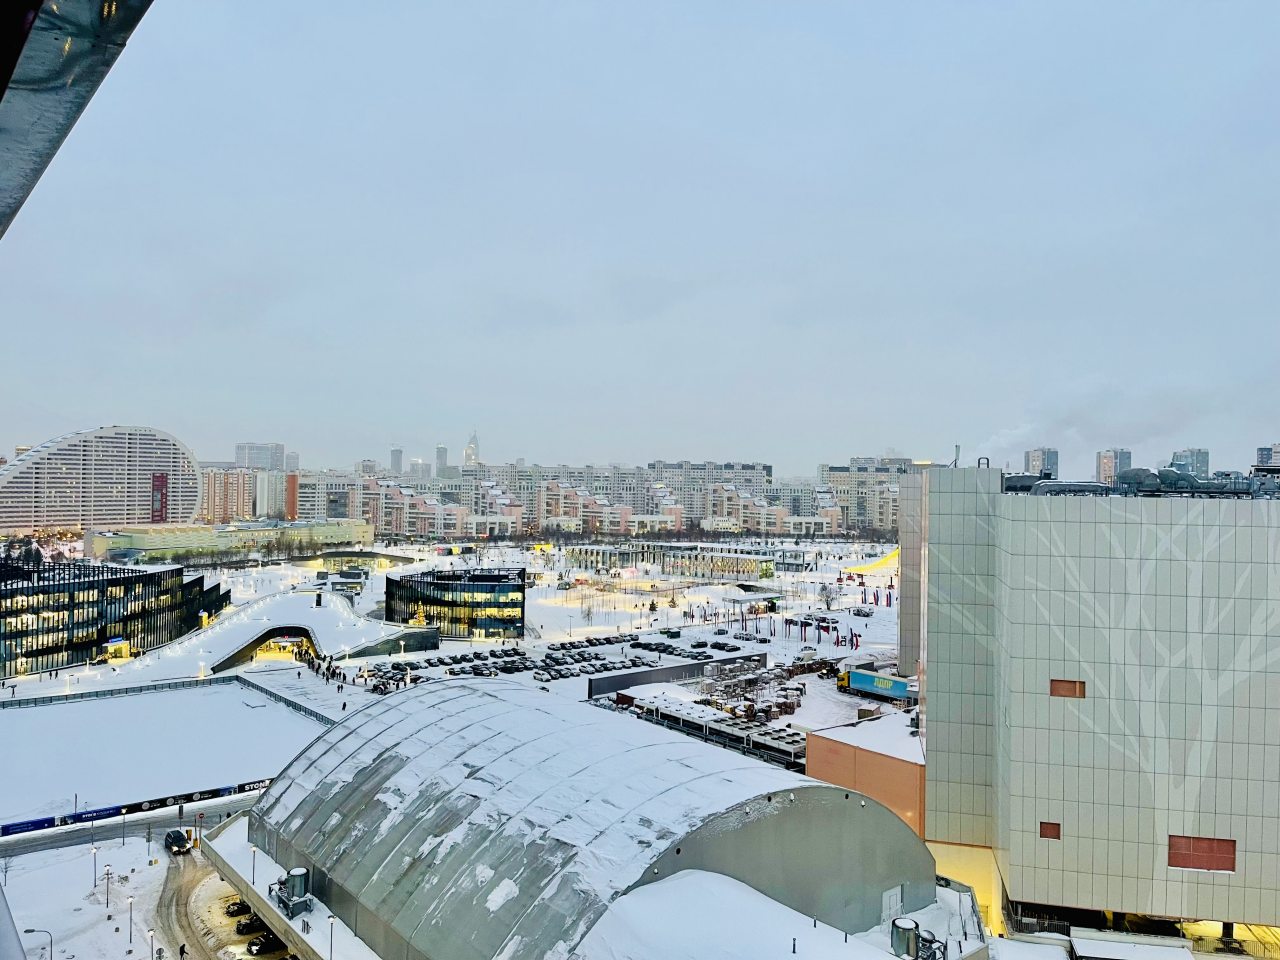 Автостоянка / Парковка, Апартаменты Квартира Апартаменты с видом на Москву